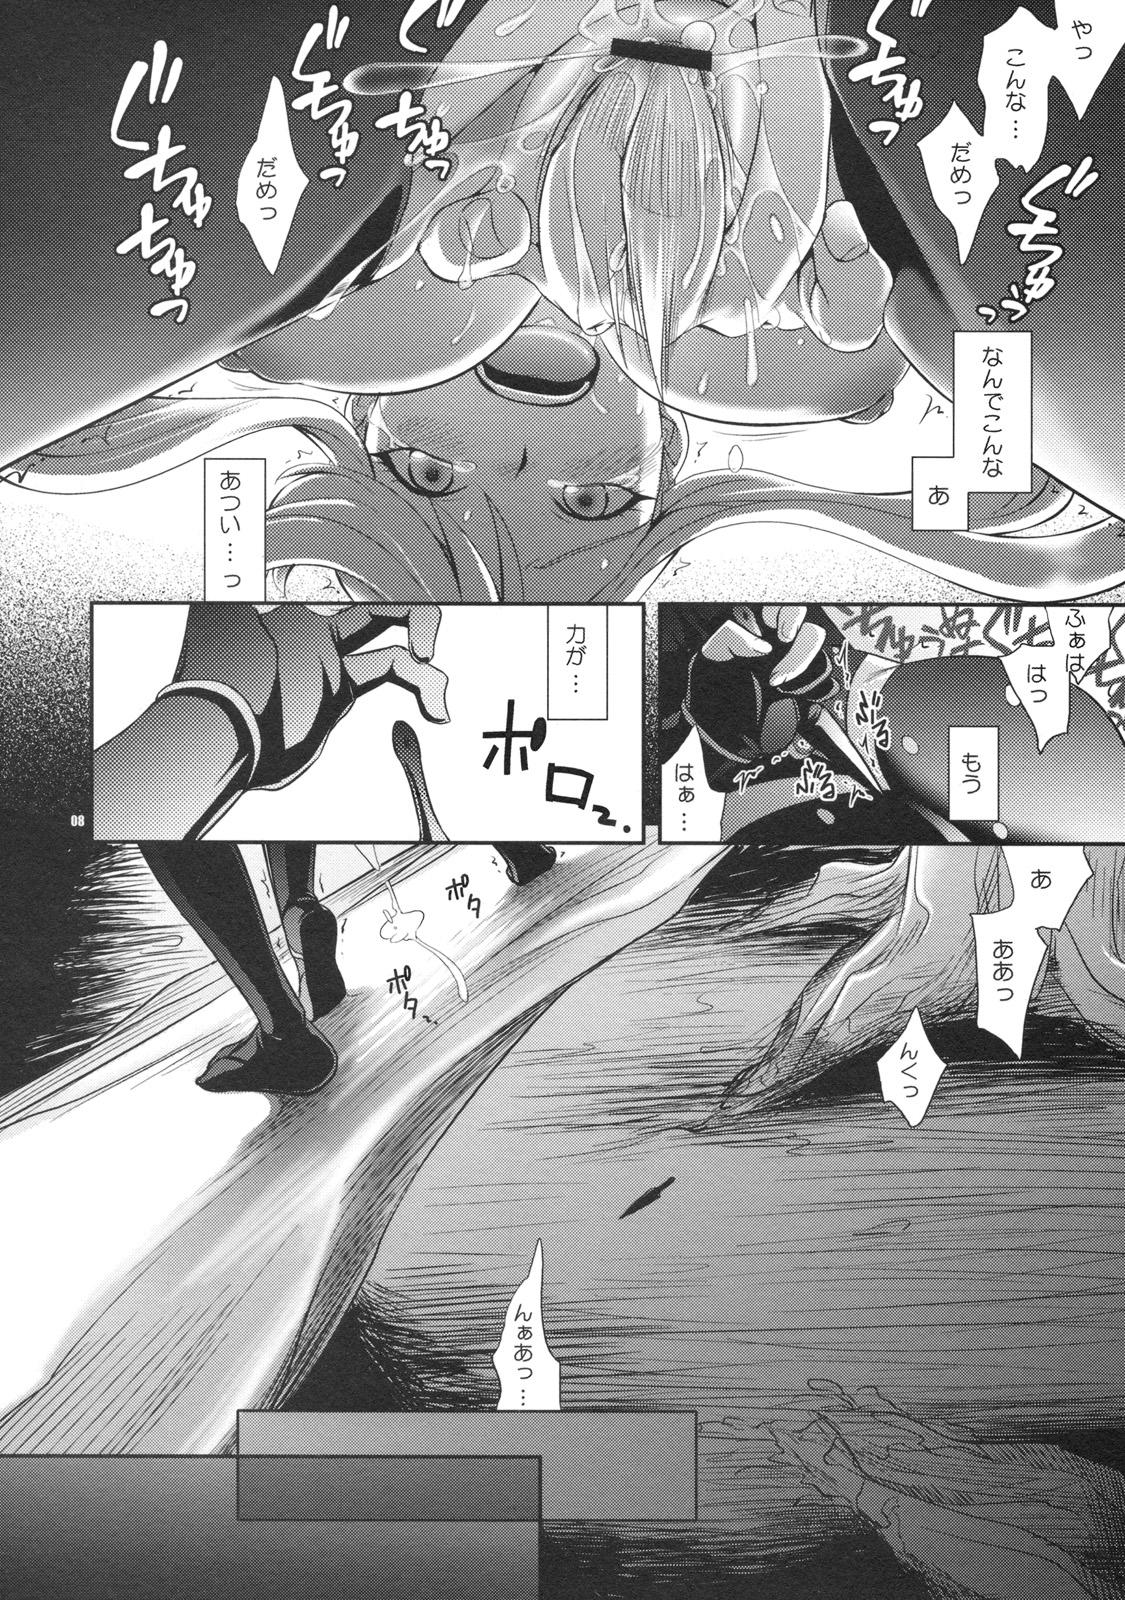 Audition Oosame Kudasai Kenshin-sama! - Sengoku basara Step Sister - Page 7